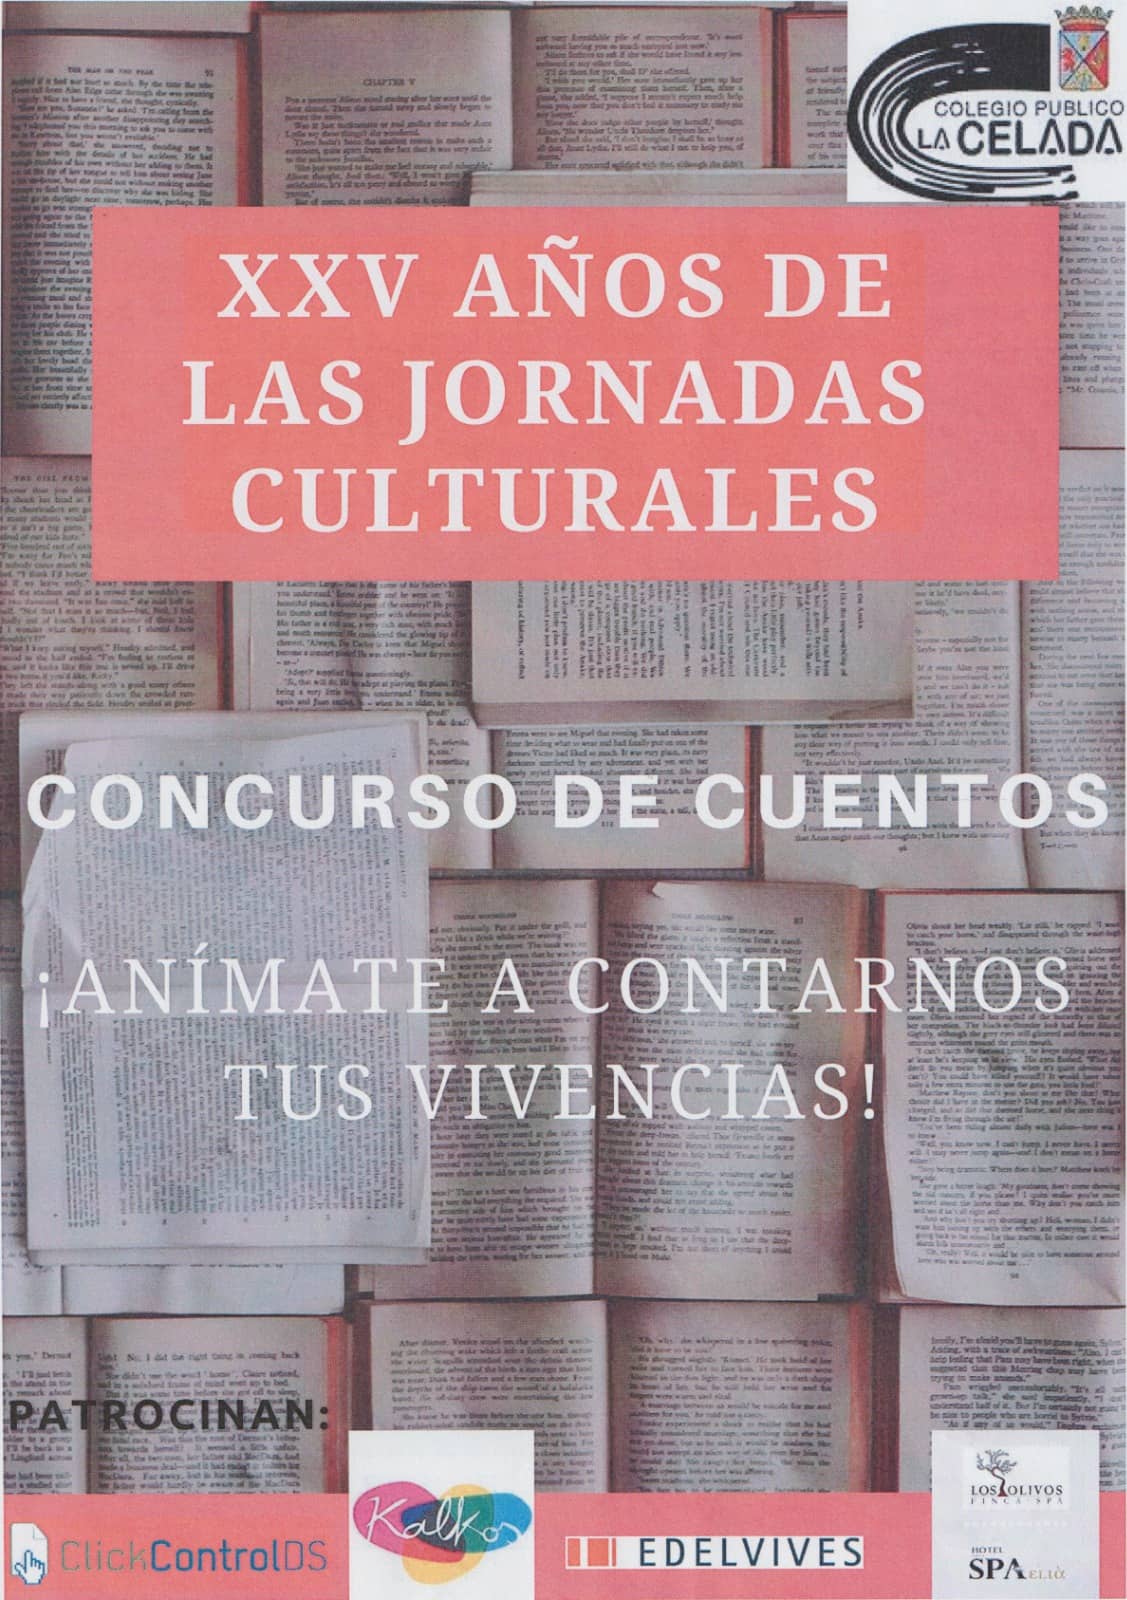 El CEIP La Celada convoca el concurso de cuentos “Veinticinco años de jornadas culturales en La Celada”